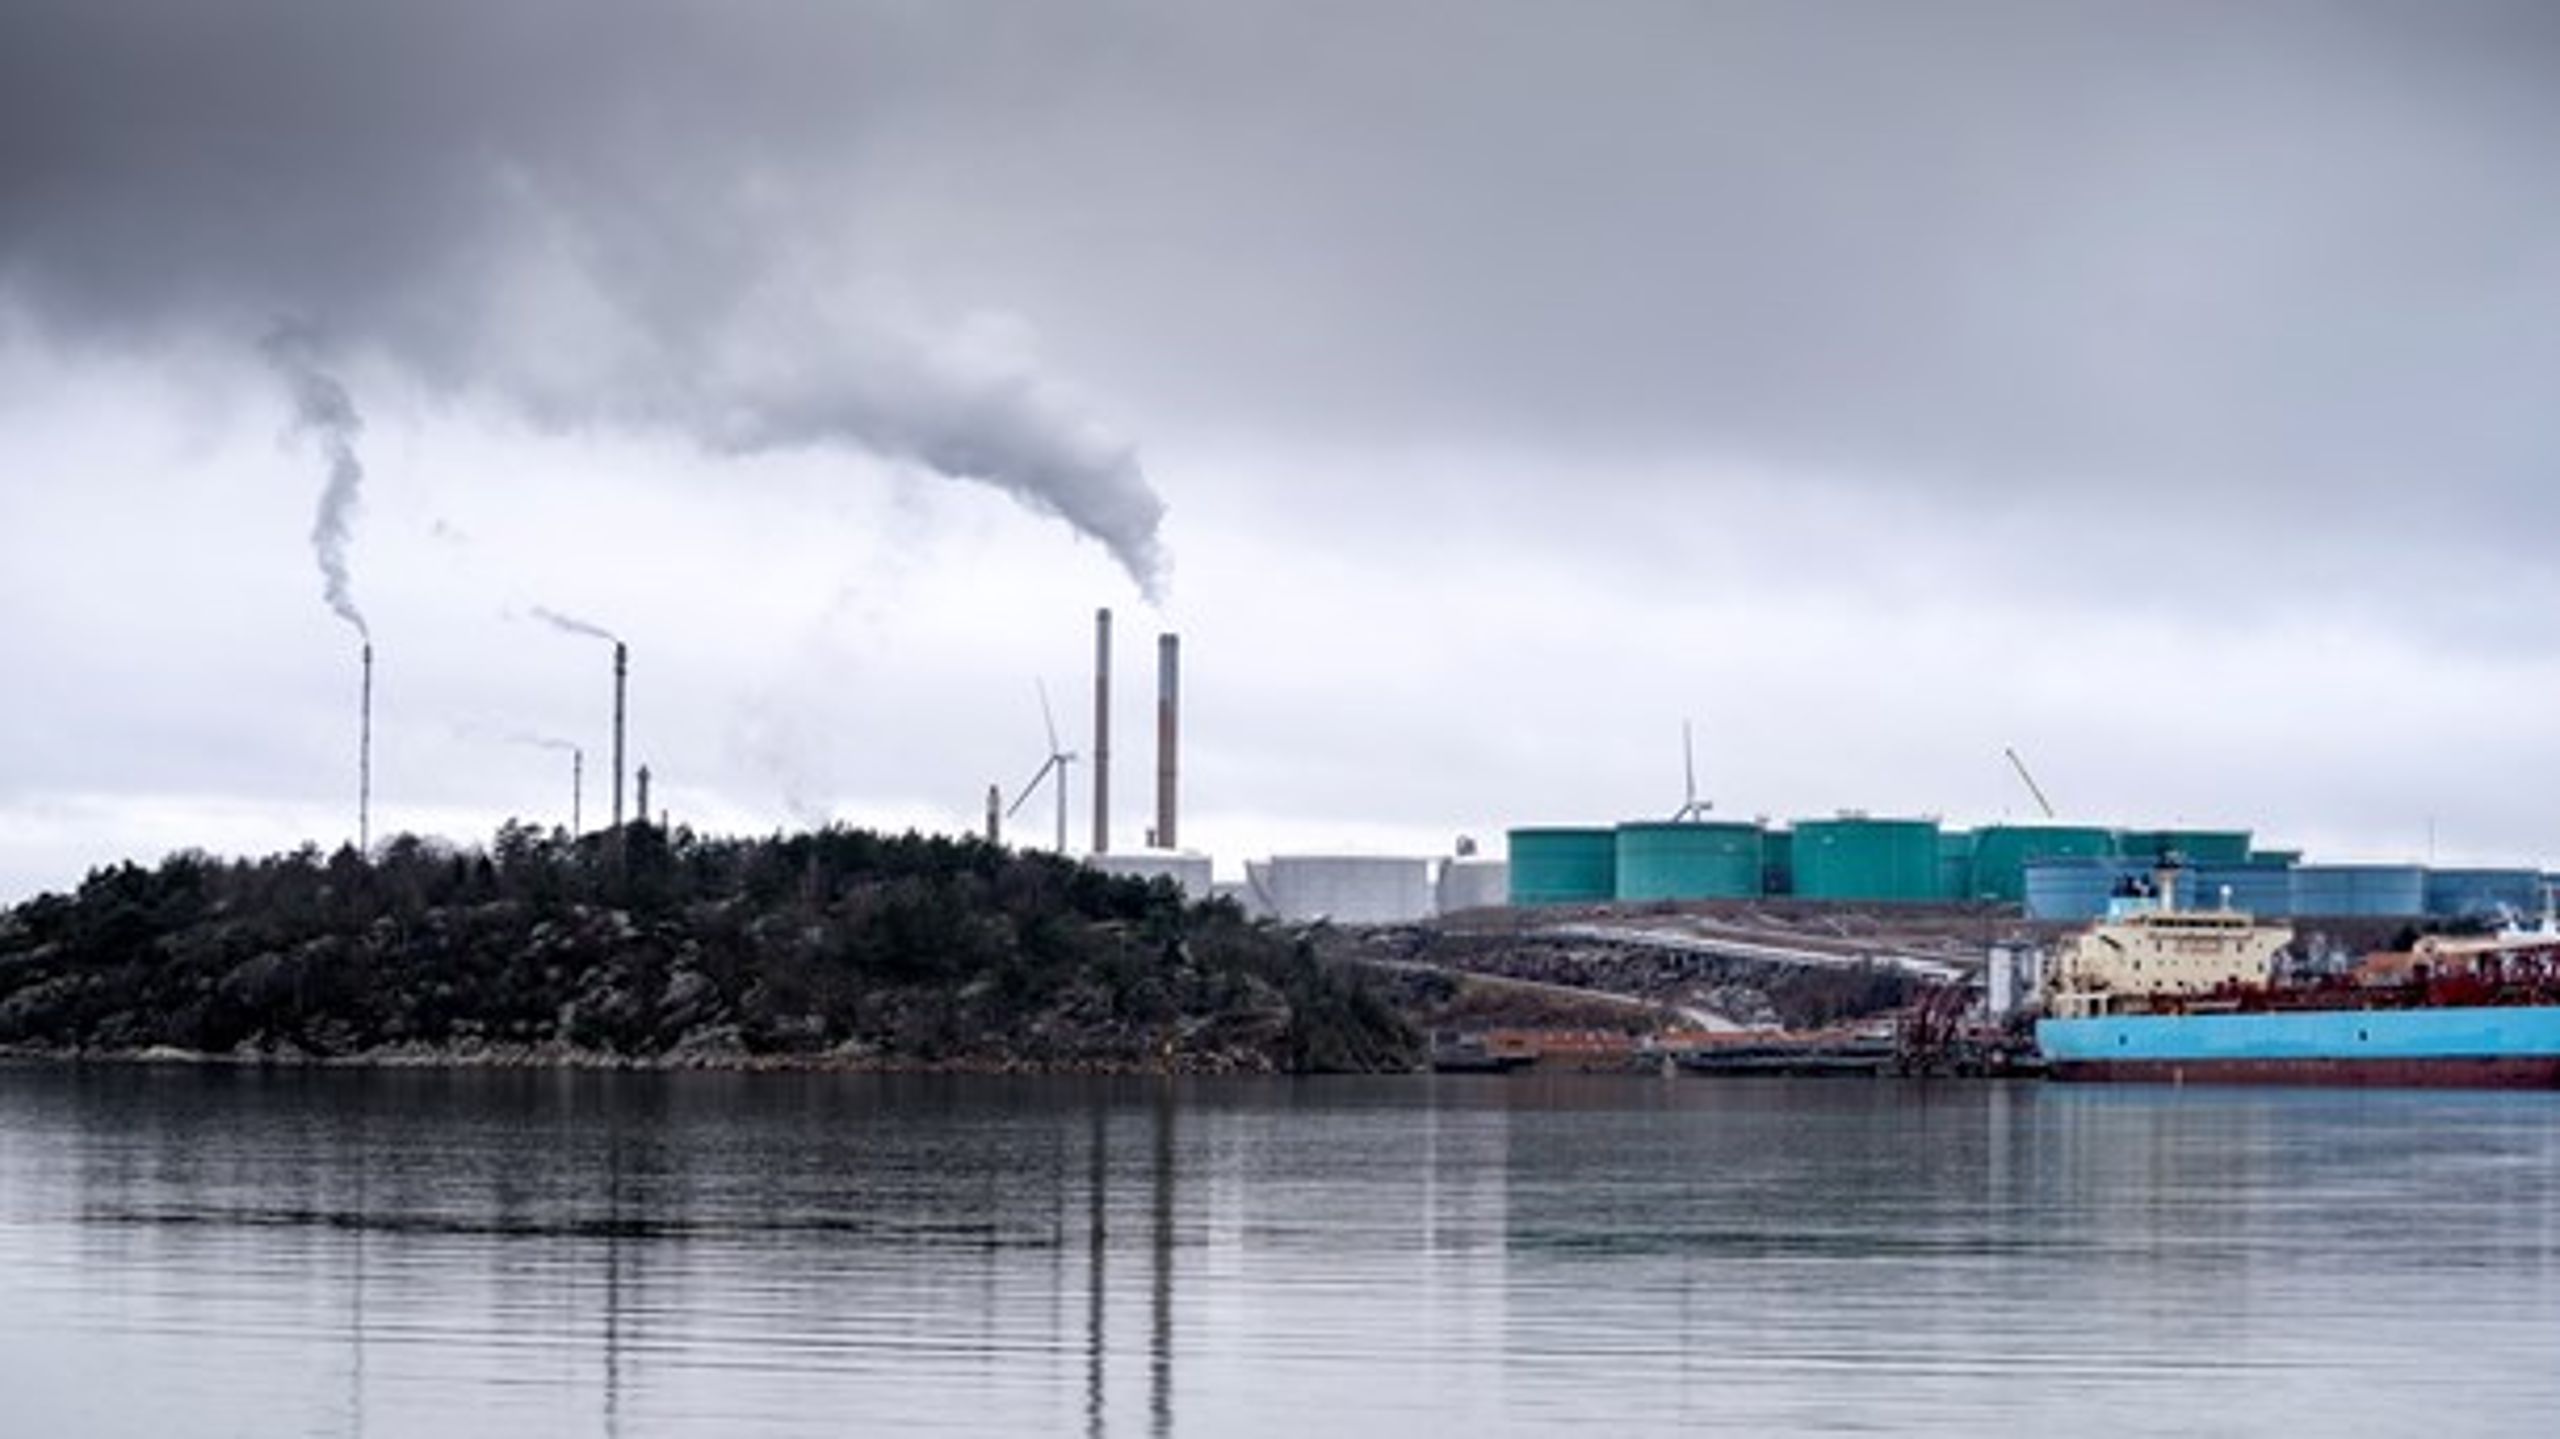 Ett tillstånd till Preemraff skulle hindra Sverige från att nå sina klimatmål och att uppfylla sin del av Parisavtalet, skriver David Ling och Mats Abrahamsson (MP).